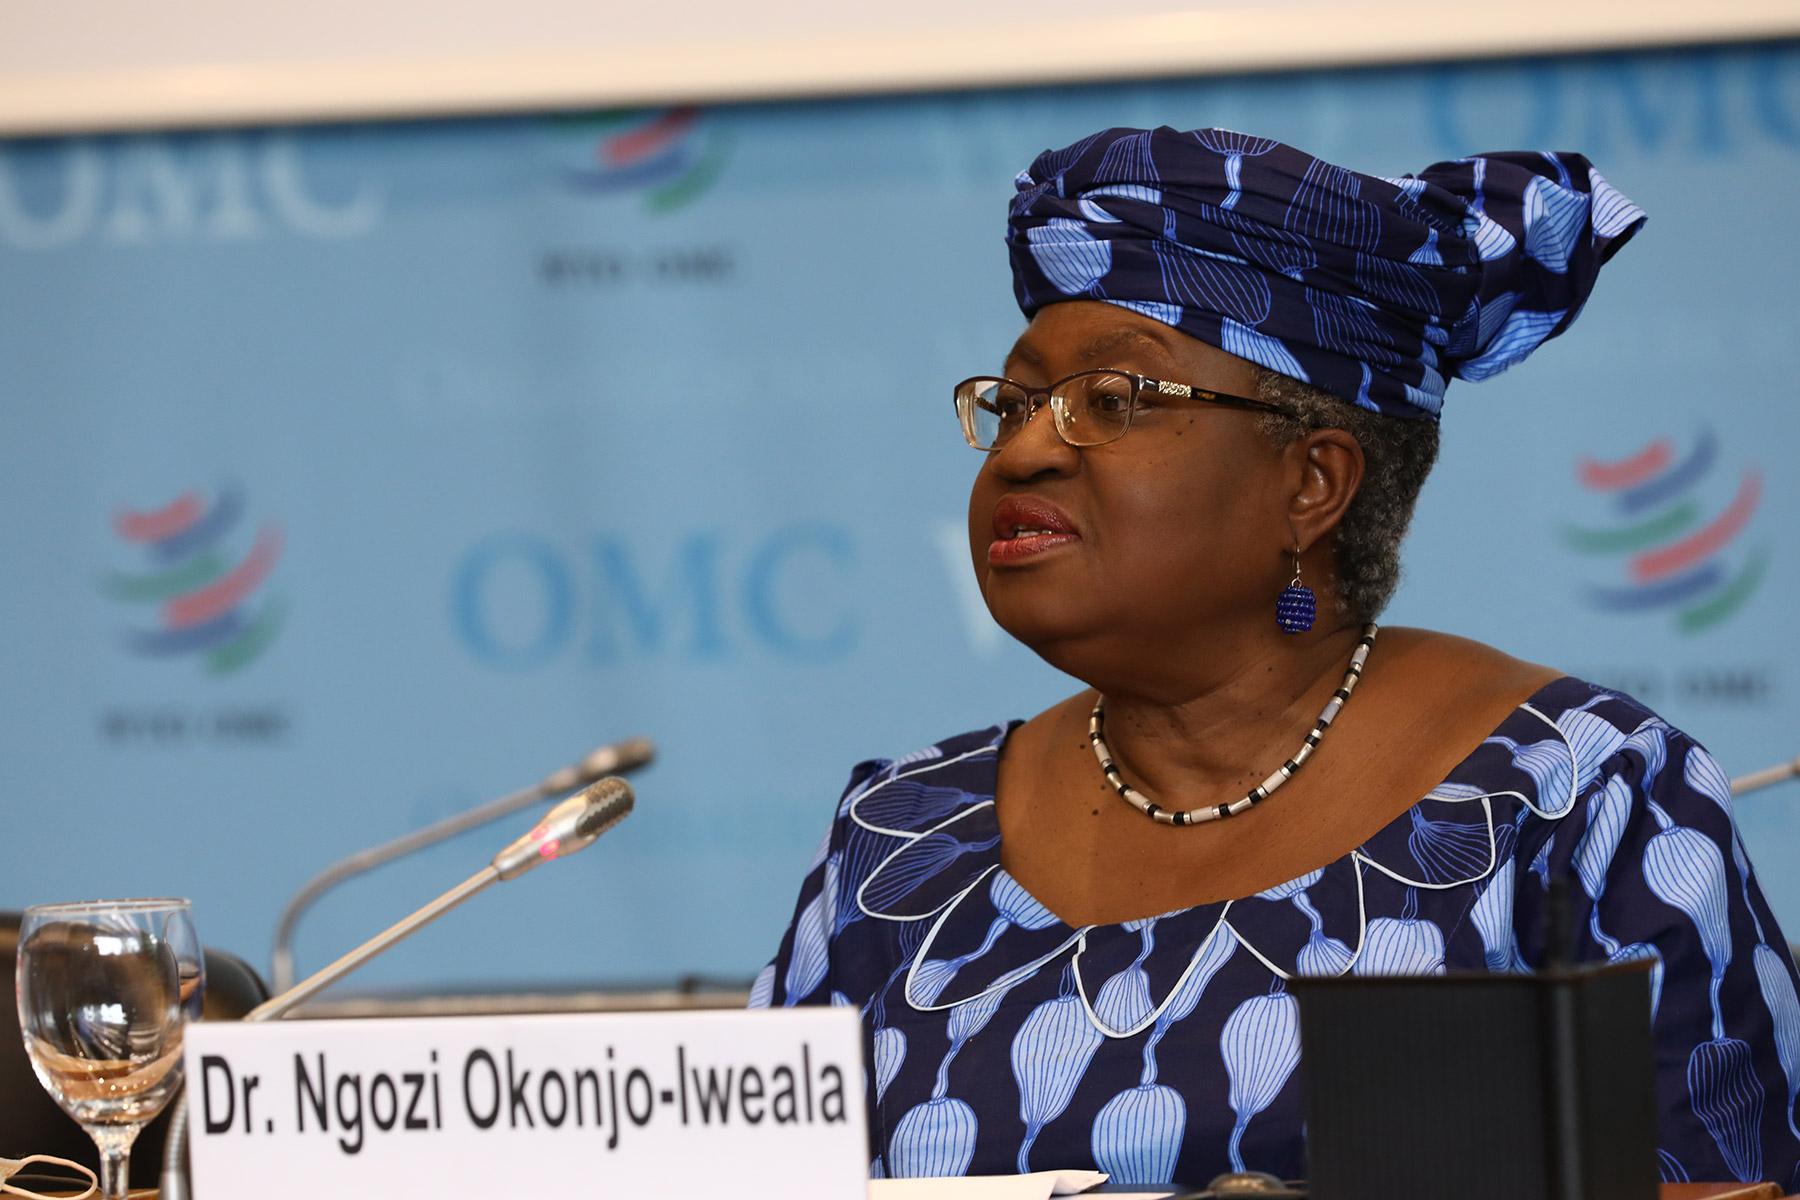 Ngozi Okonjo-Iweala während des Auswahlverfahrens zur Generaldirektorin der Welthandelsorganisation. Foto: ©WTO/Jay Louvion